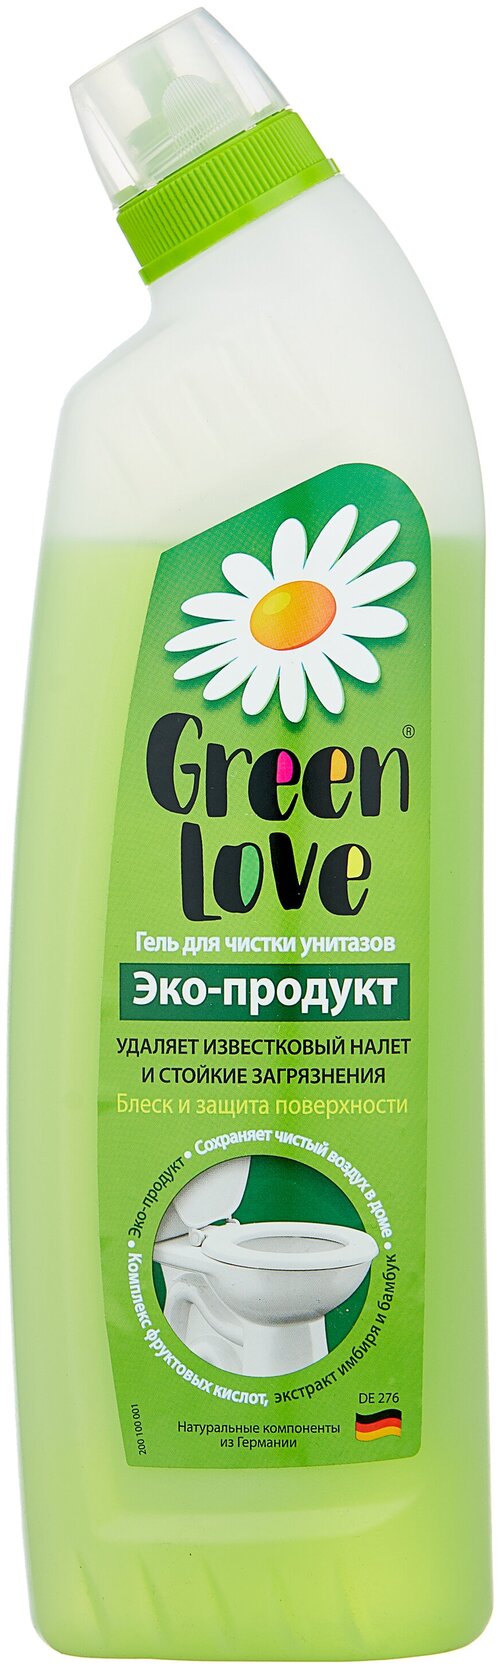 Гель для чистки унитазов Green Love, 750 мл, 750 г